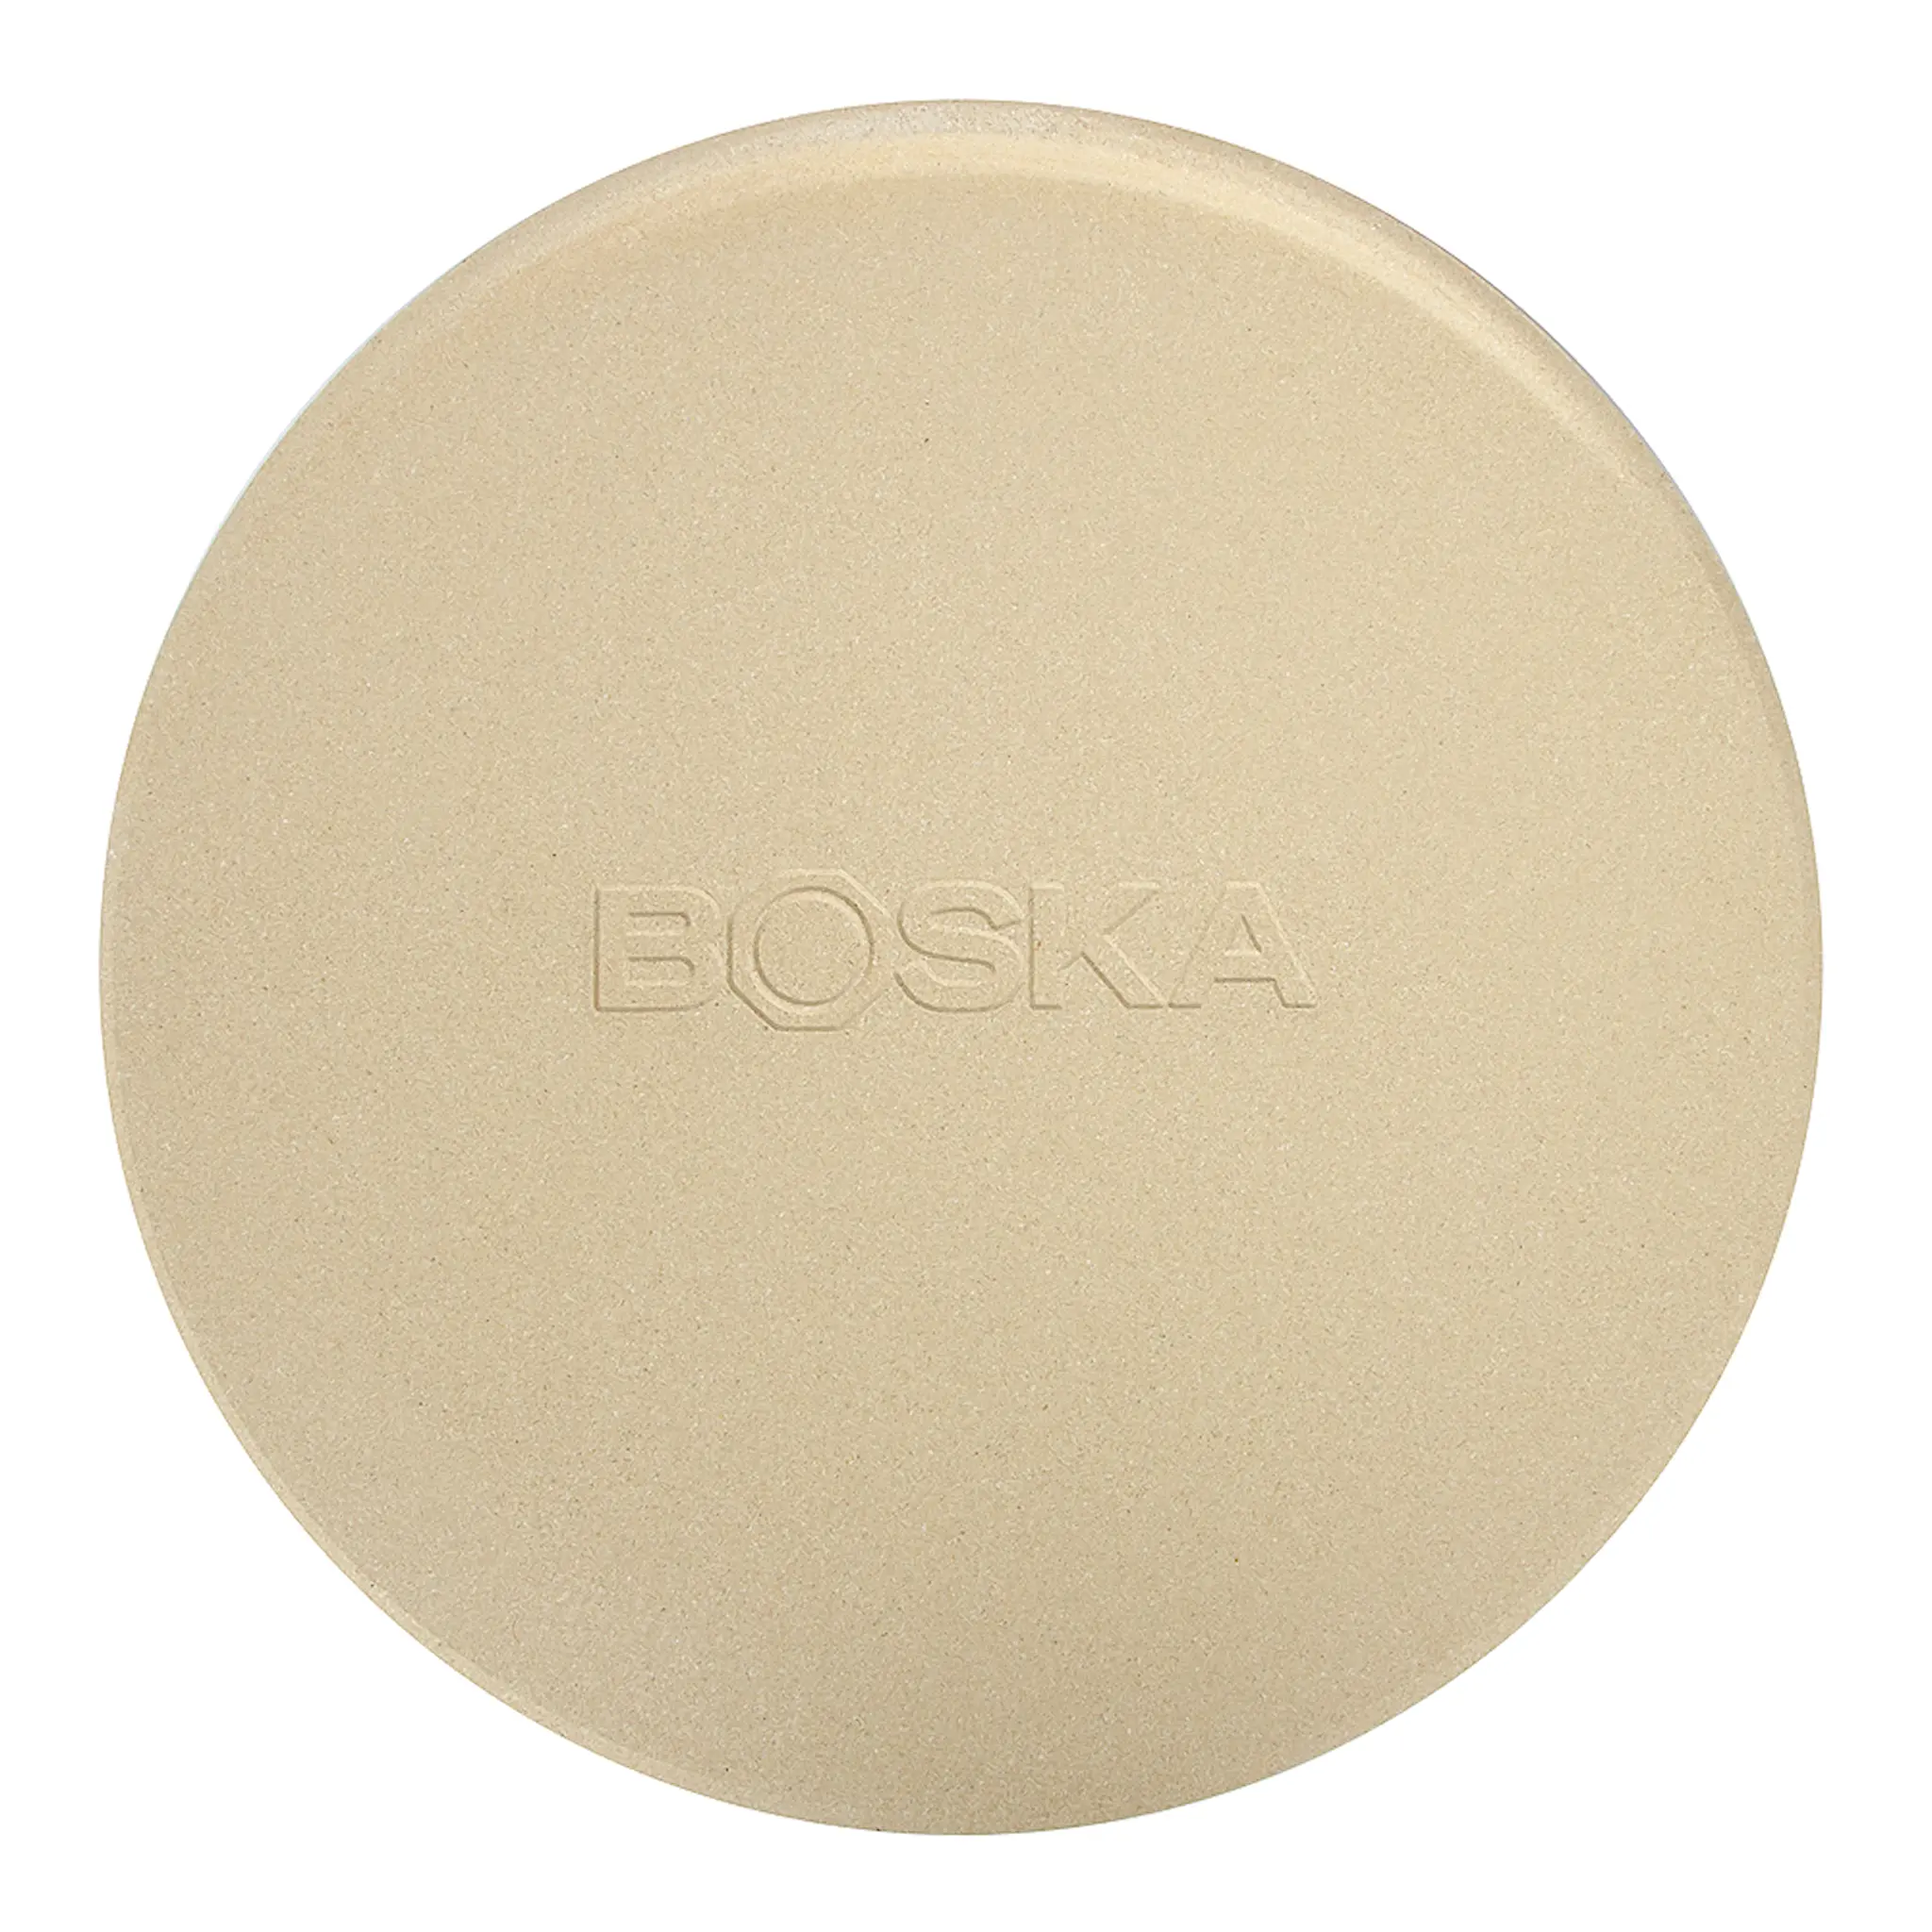 Boska Pizzawares Exclusive Pizzasten Deluxe Rund